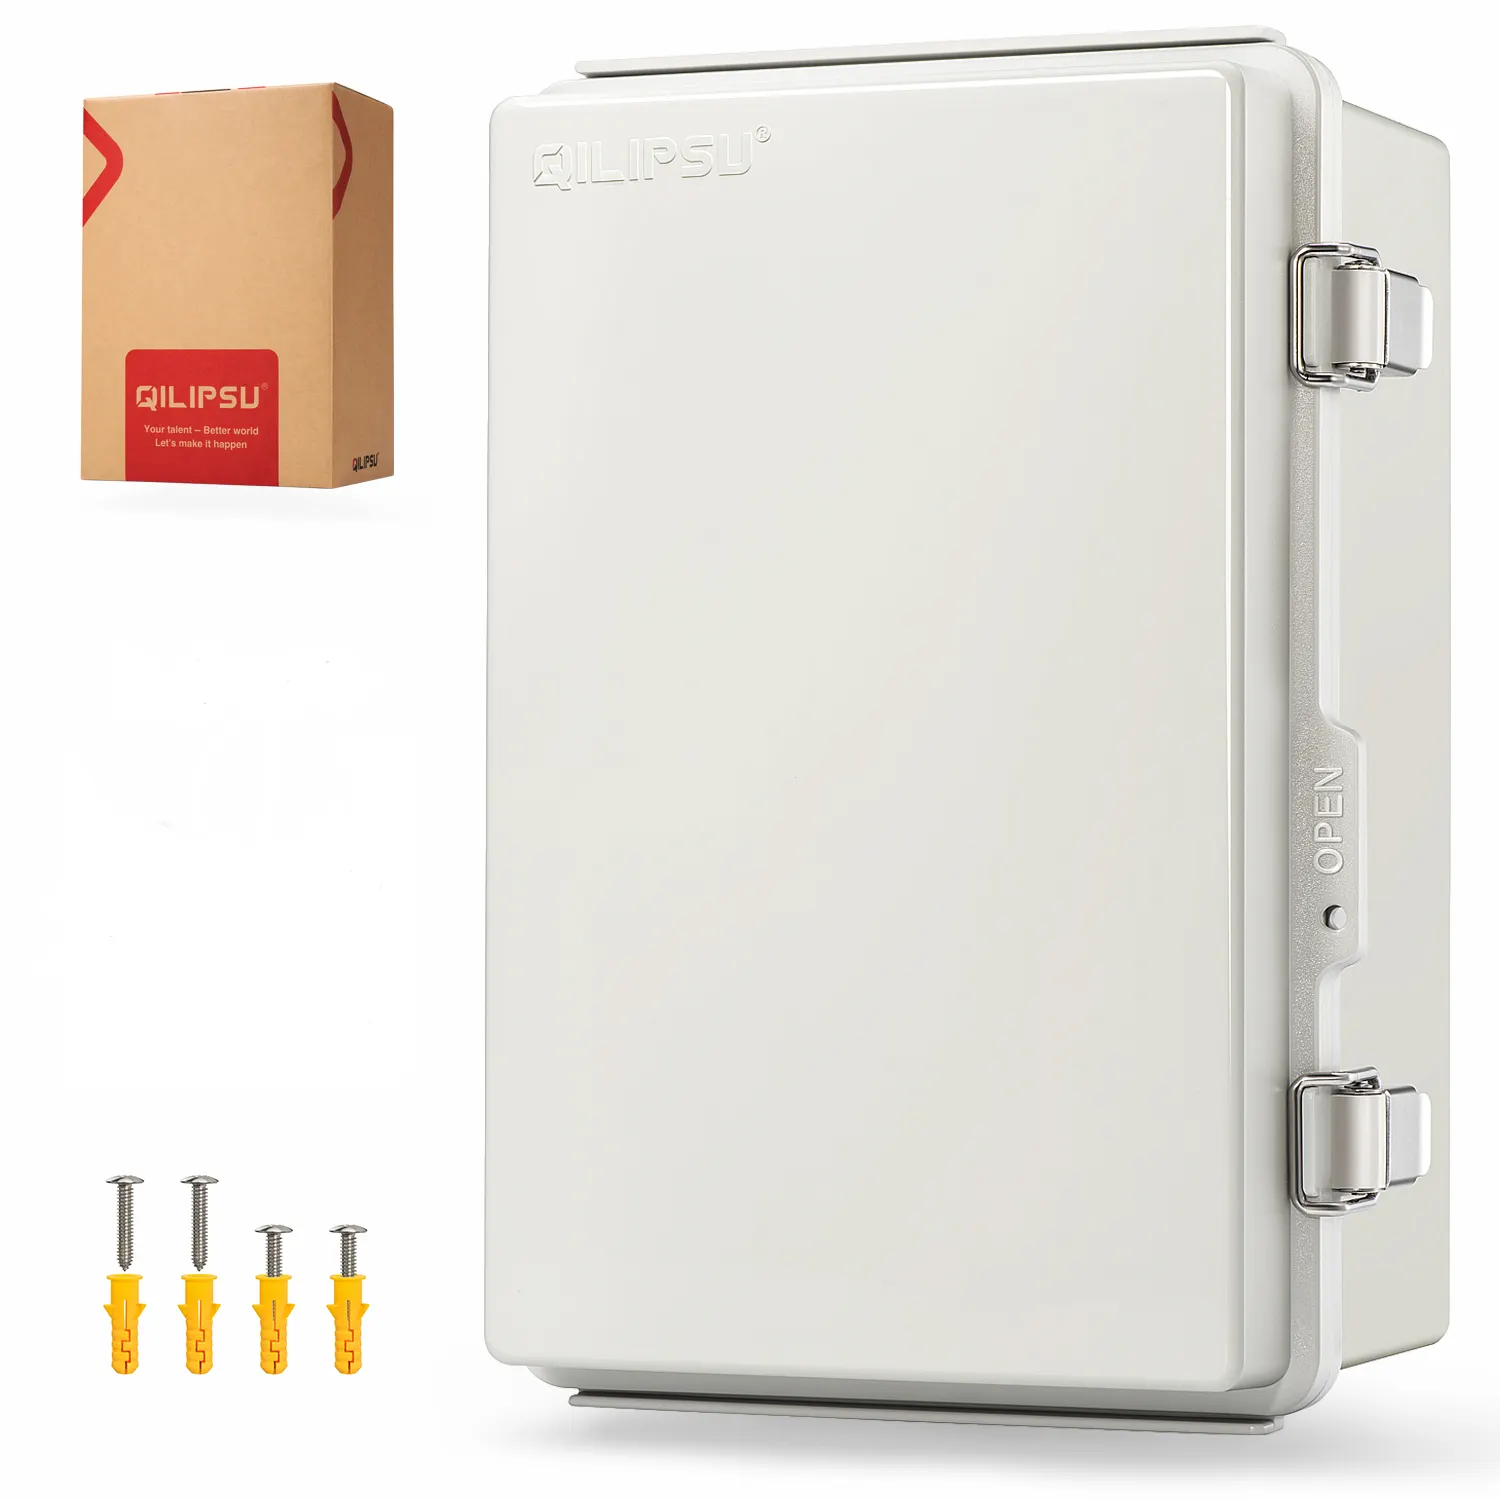 QILIPSU caja eléctrica impermeable al aire libre caja de conexiones IP67 PC/ABS plástico Proejct gris Wifi caja 11,4 "x 7,5" x 5,5"